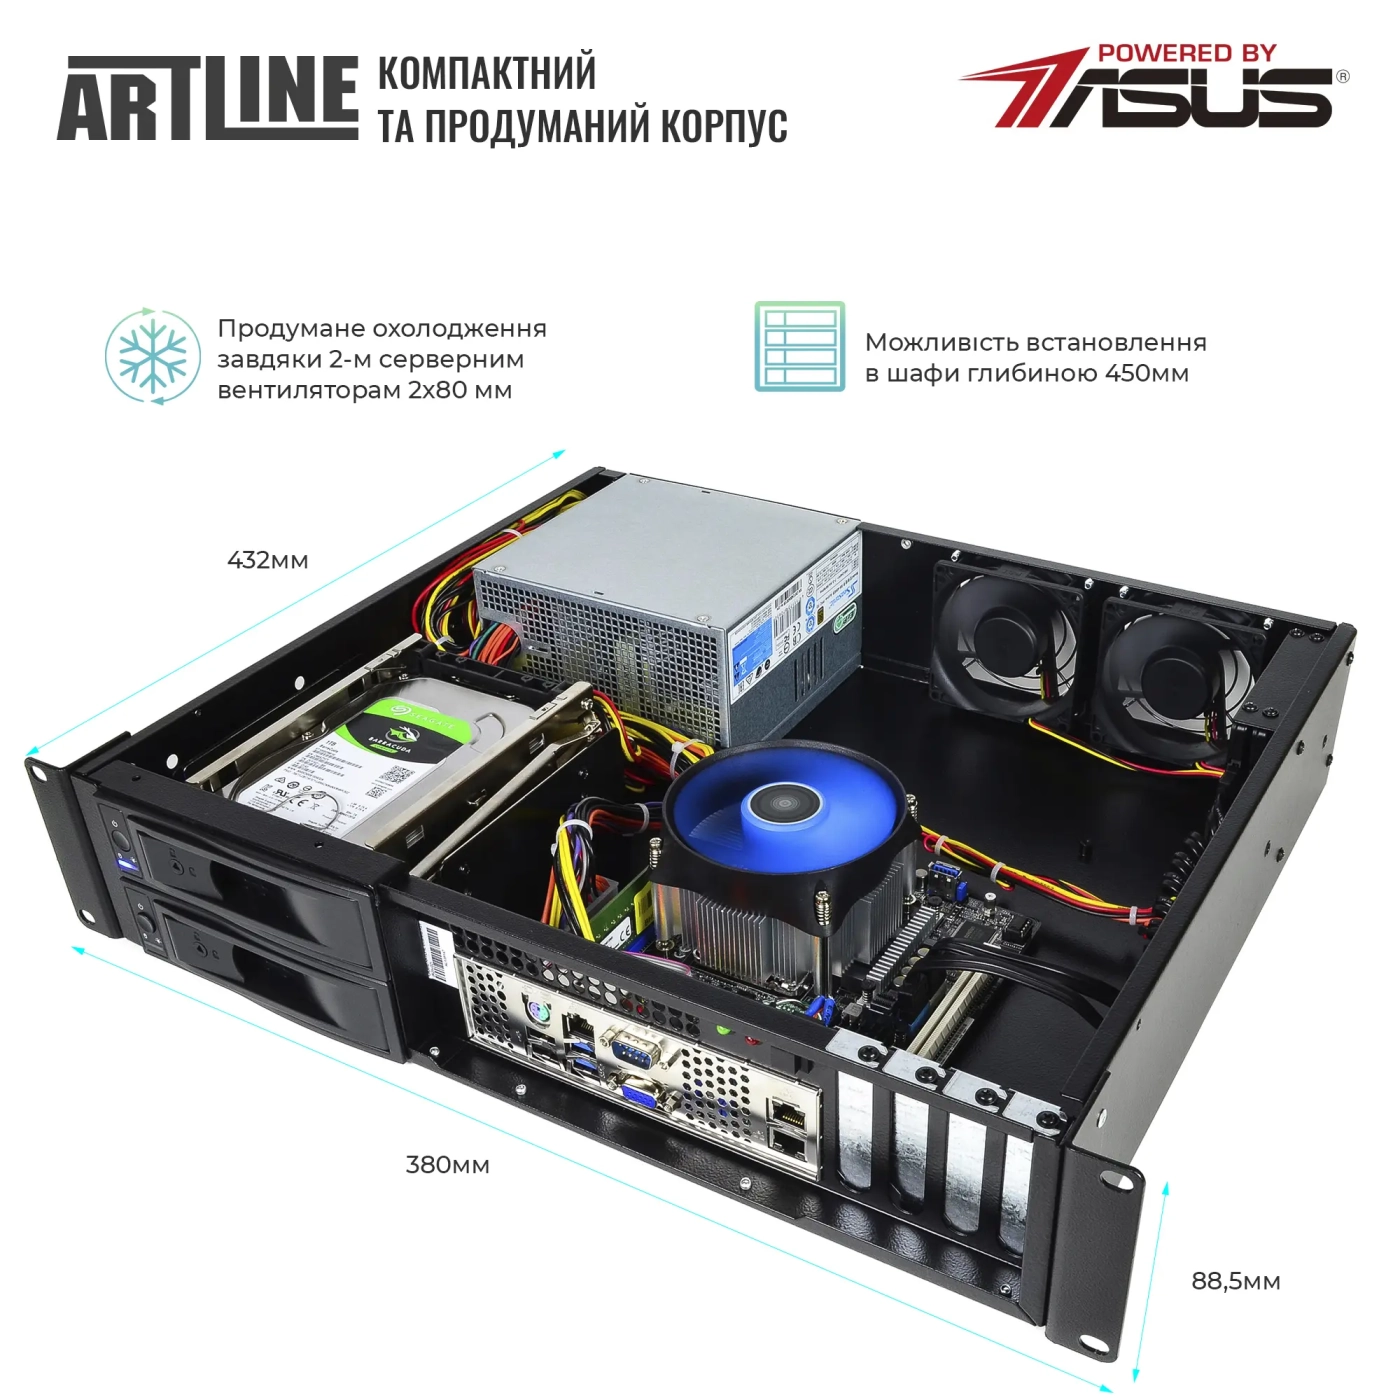 Купить Сервер ARTLINE Business R35 (R35v53) - фото 3